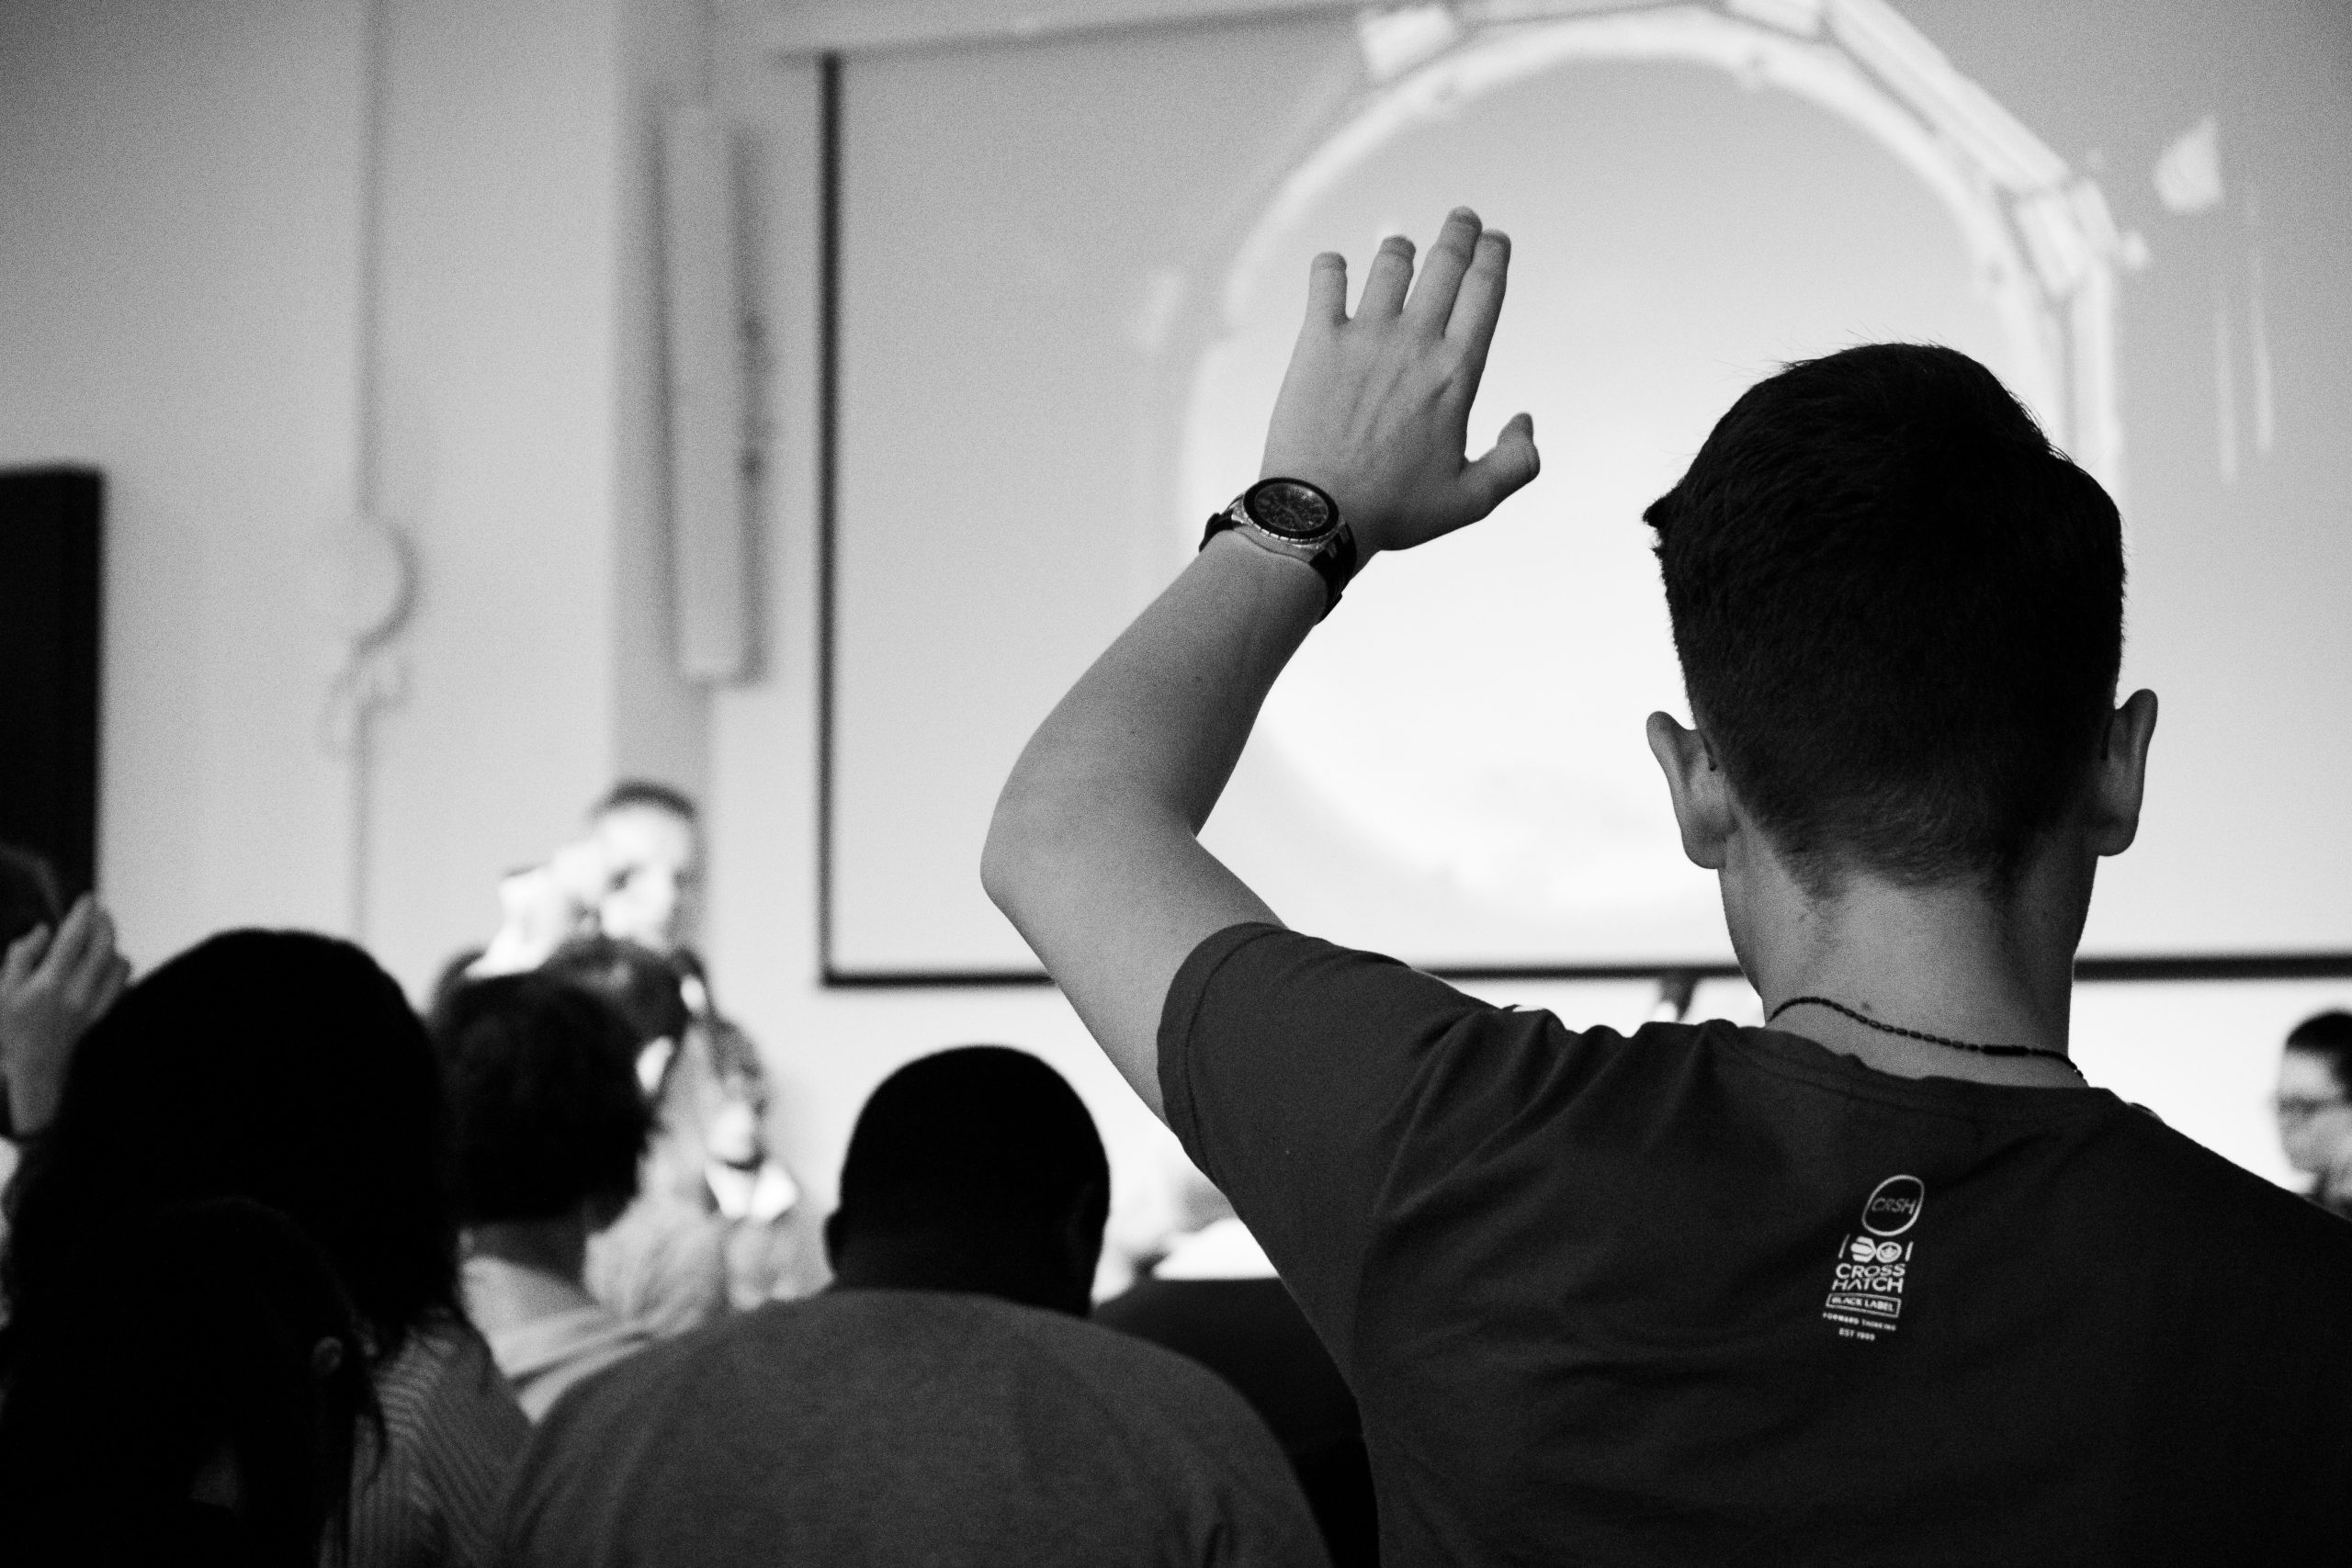 A person raising their hand during a presentation.